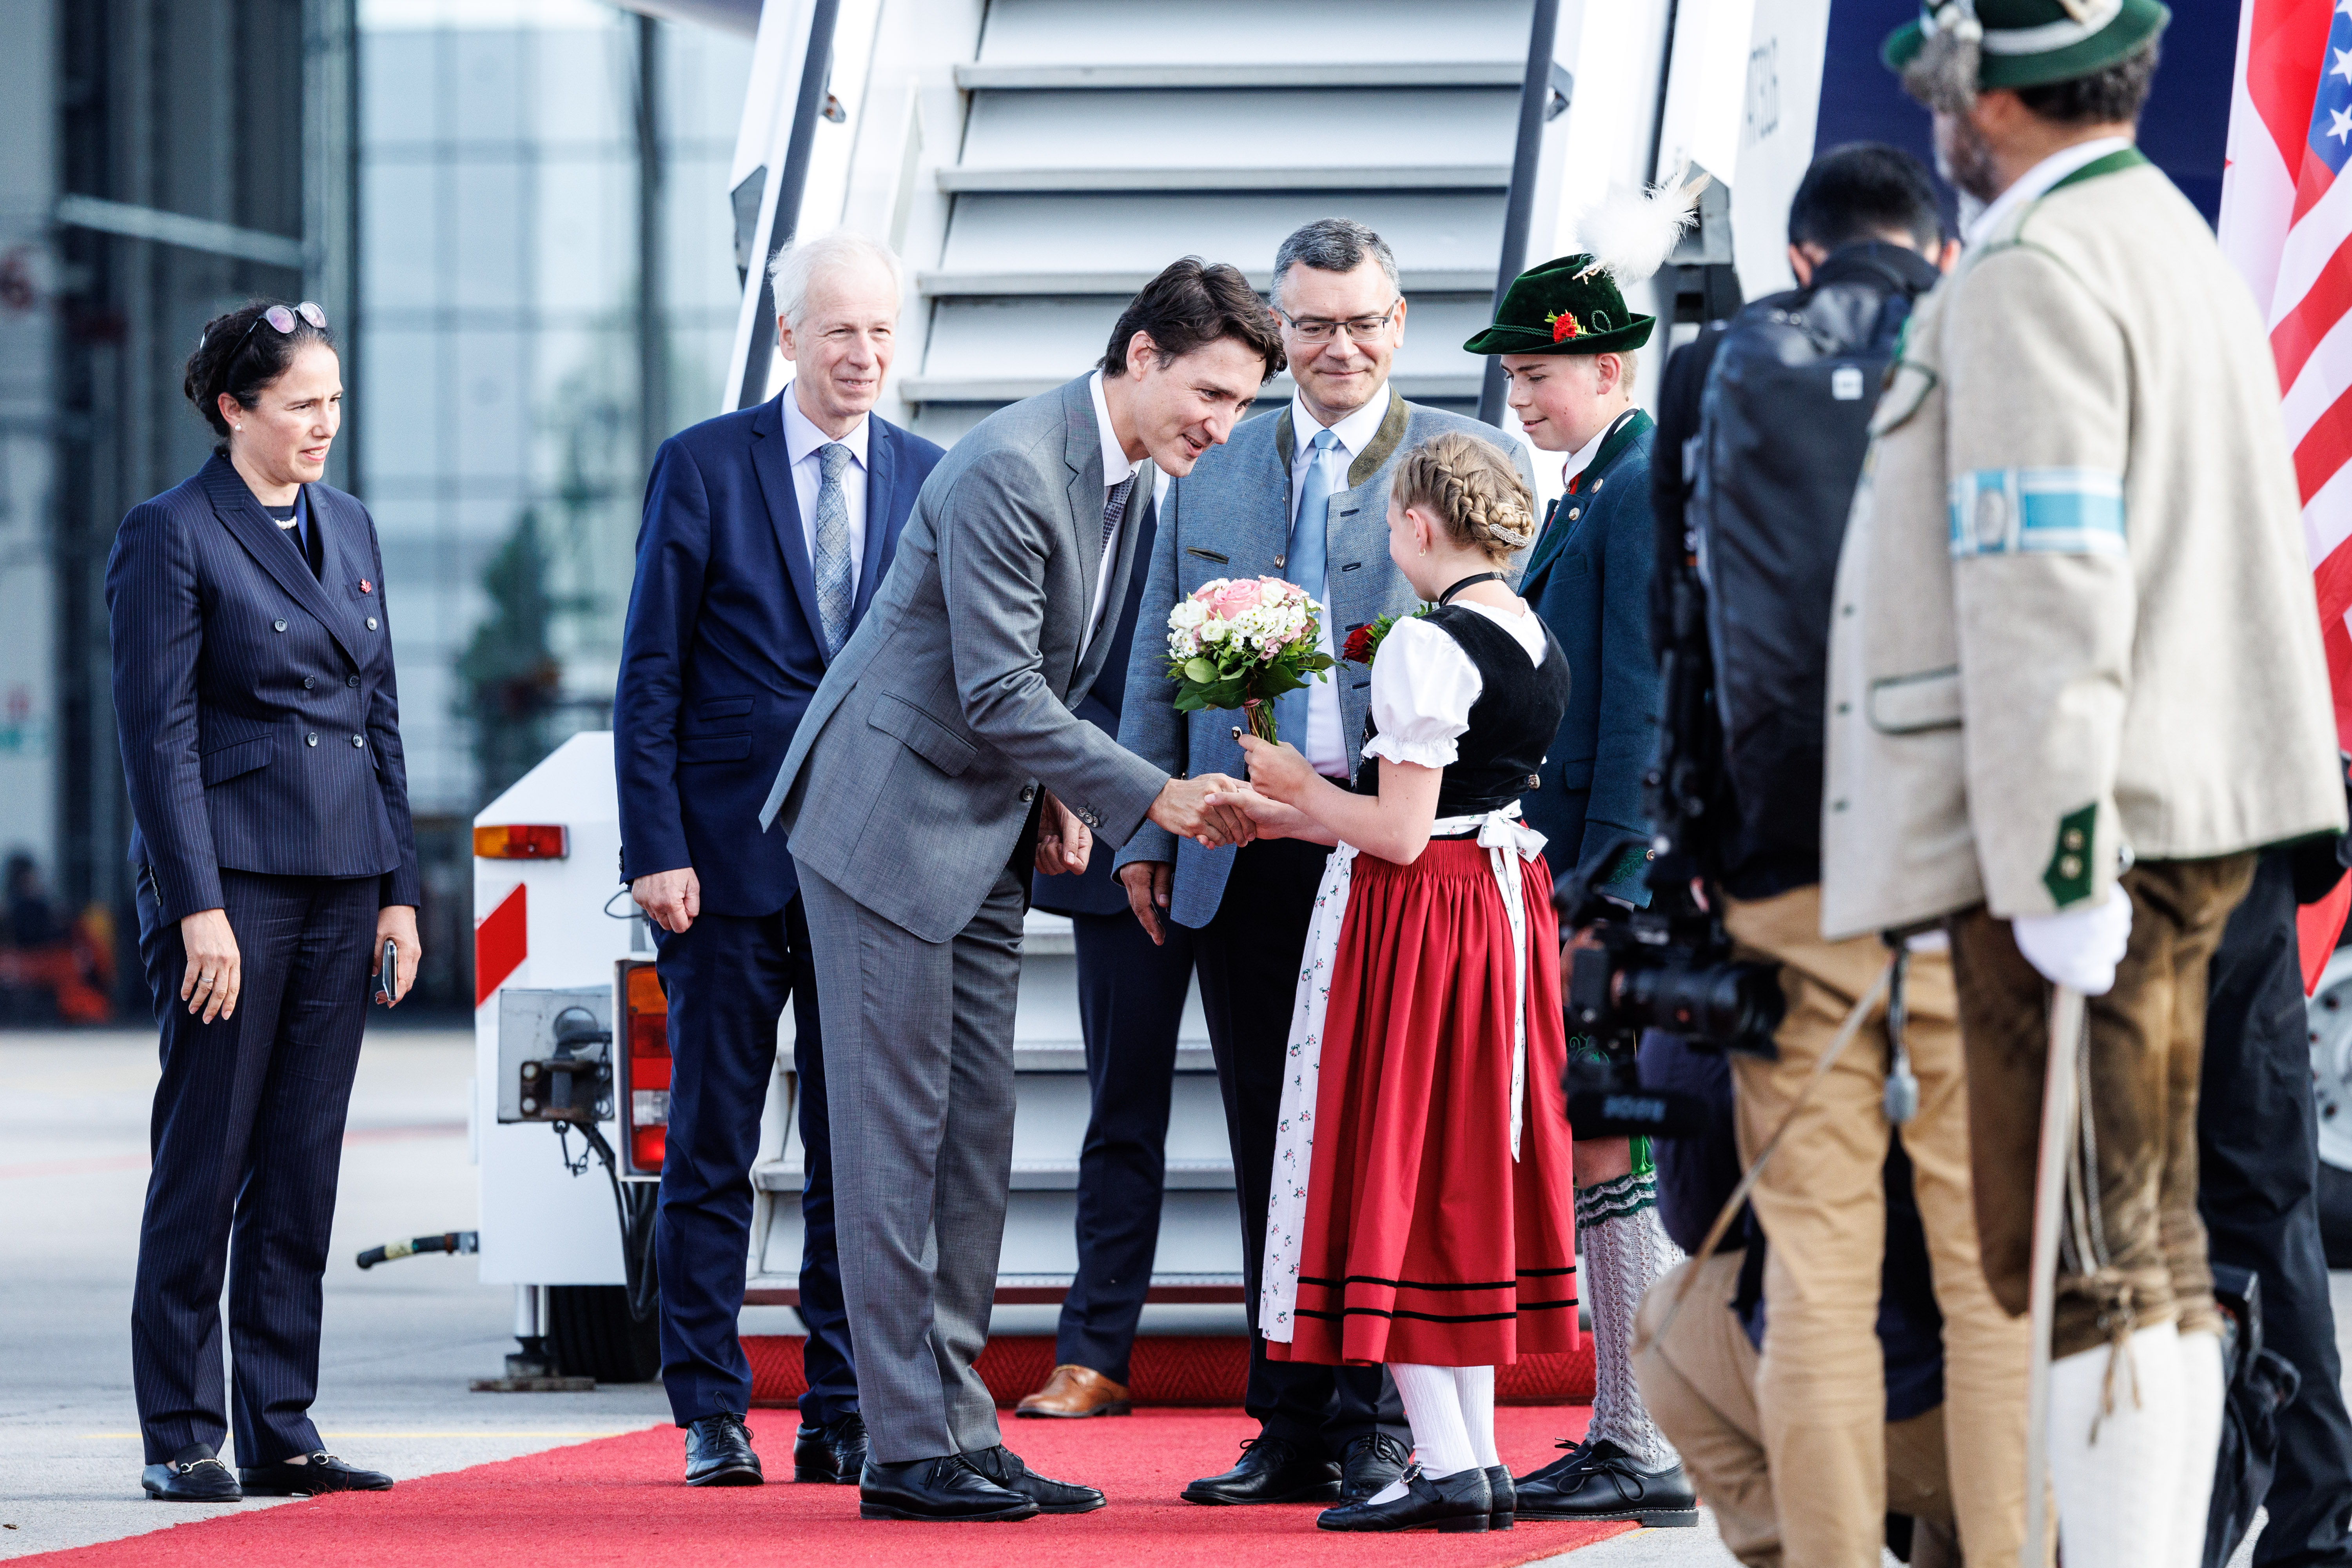 Justin Trudeau (Premierminister Kanada), wird bei seiner Ankunft am Flughafen München von einem Mädchen in Tracht begrüßt.